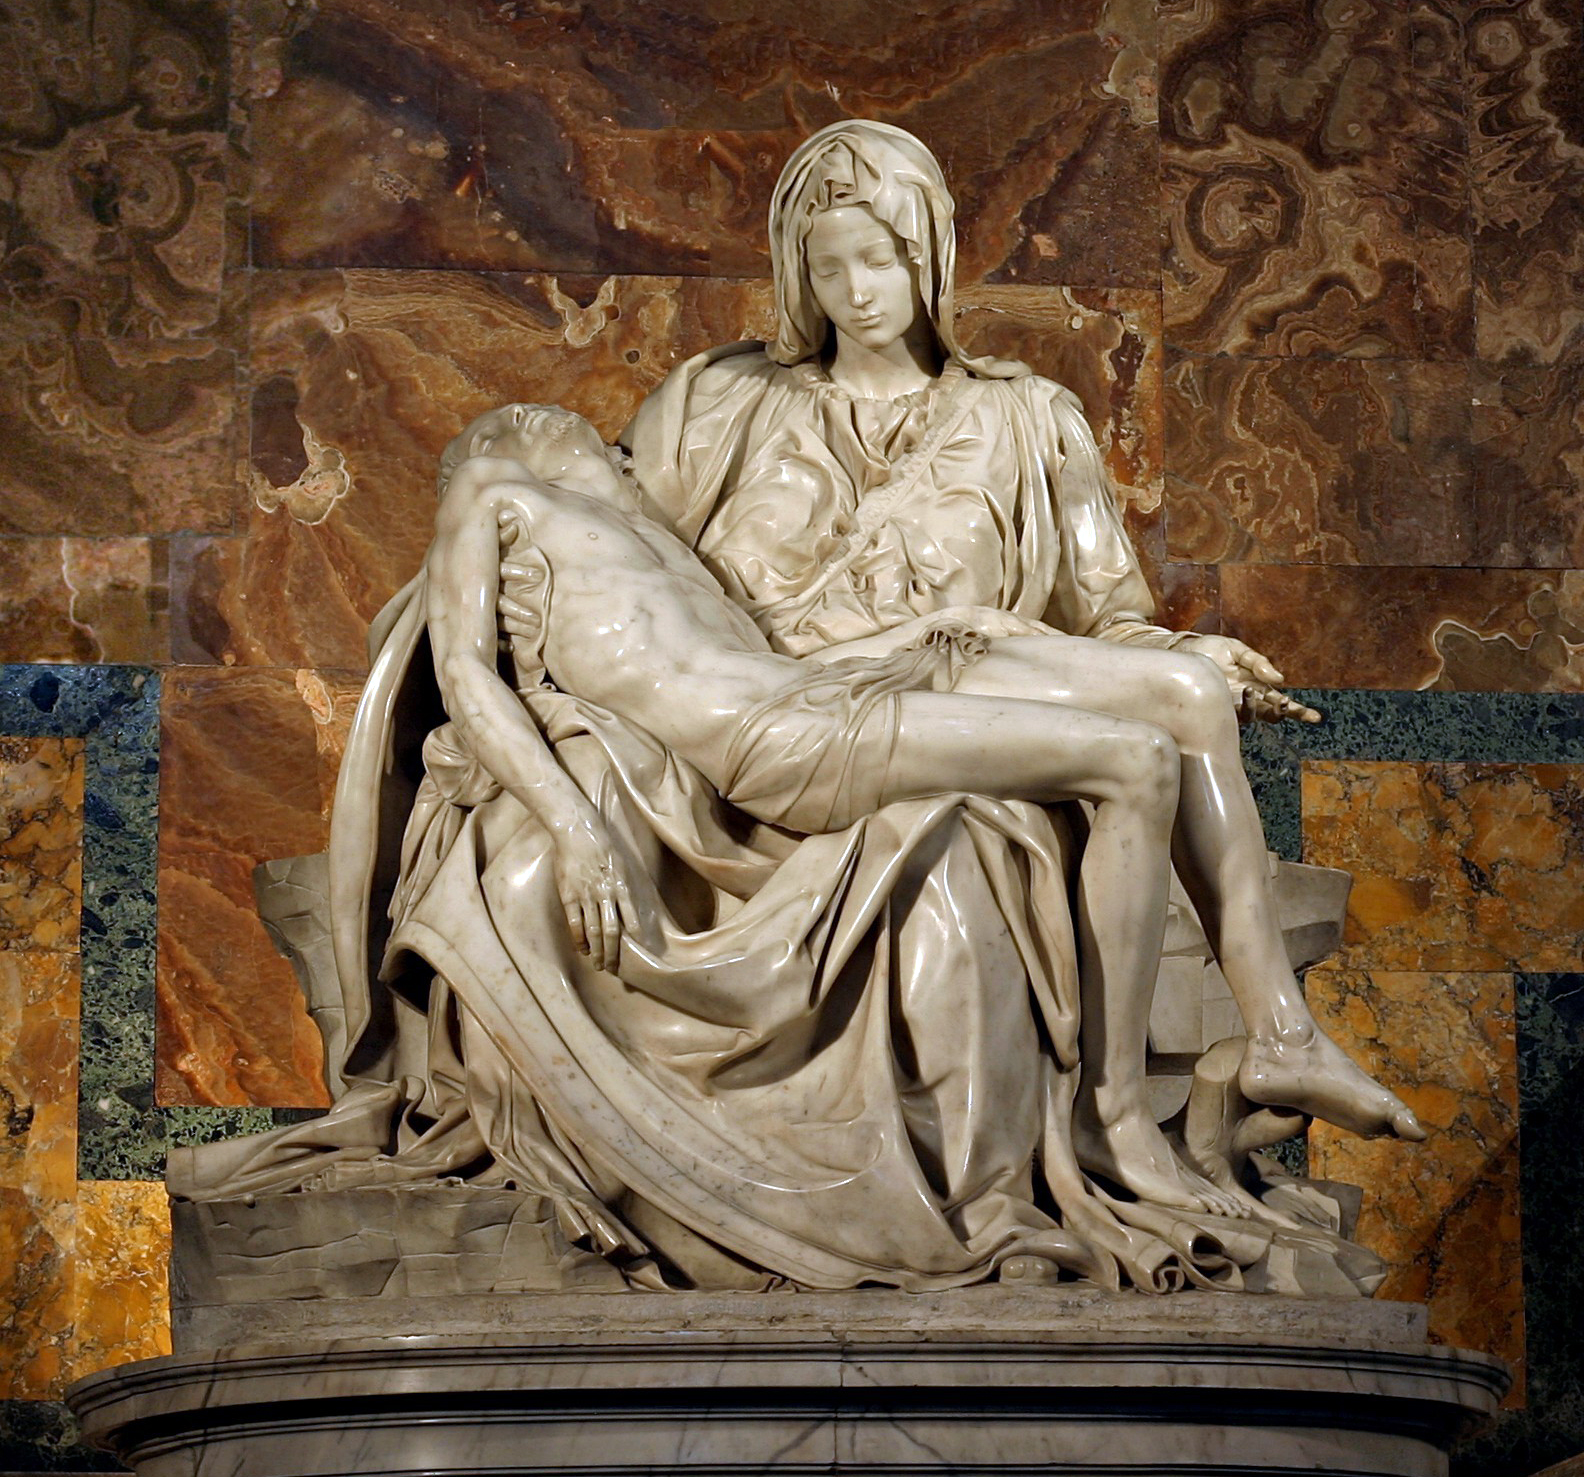 The Pietà (1498 – 99) by Michelangleo